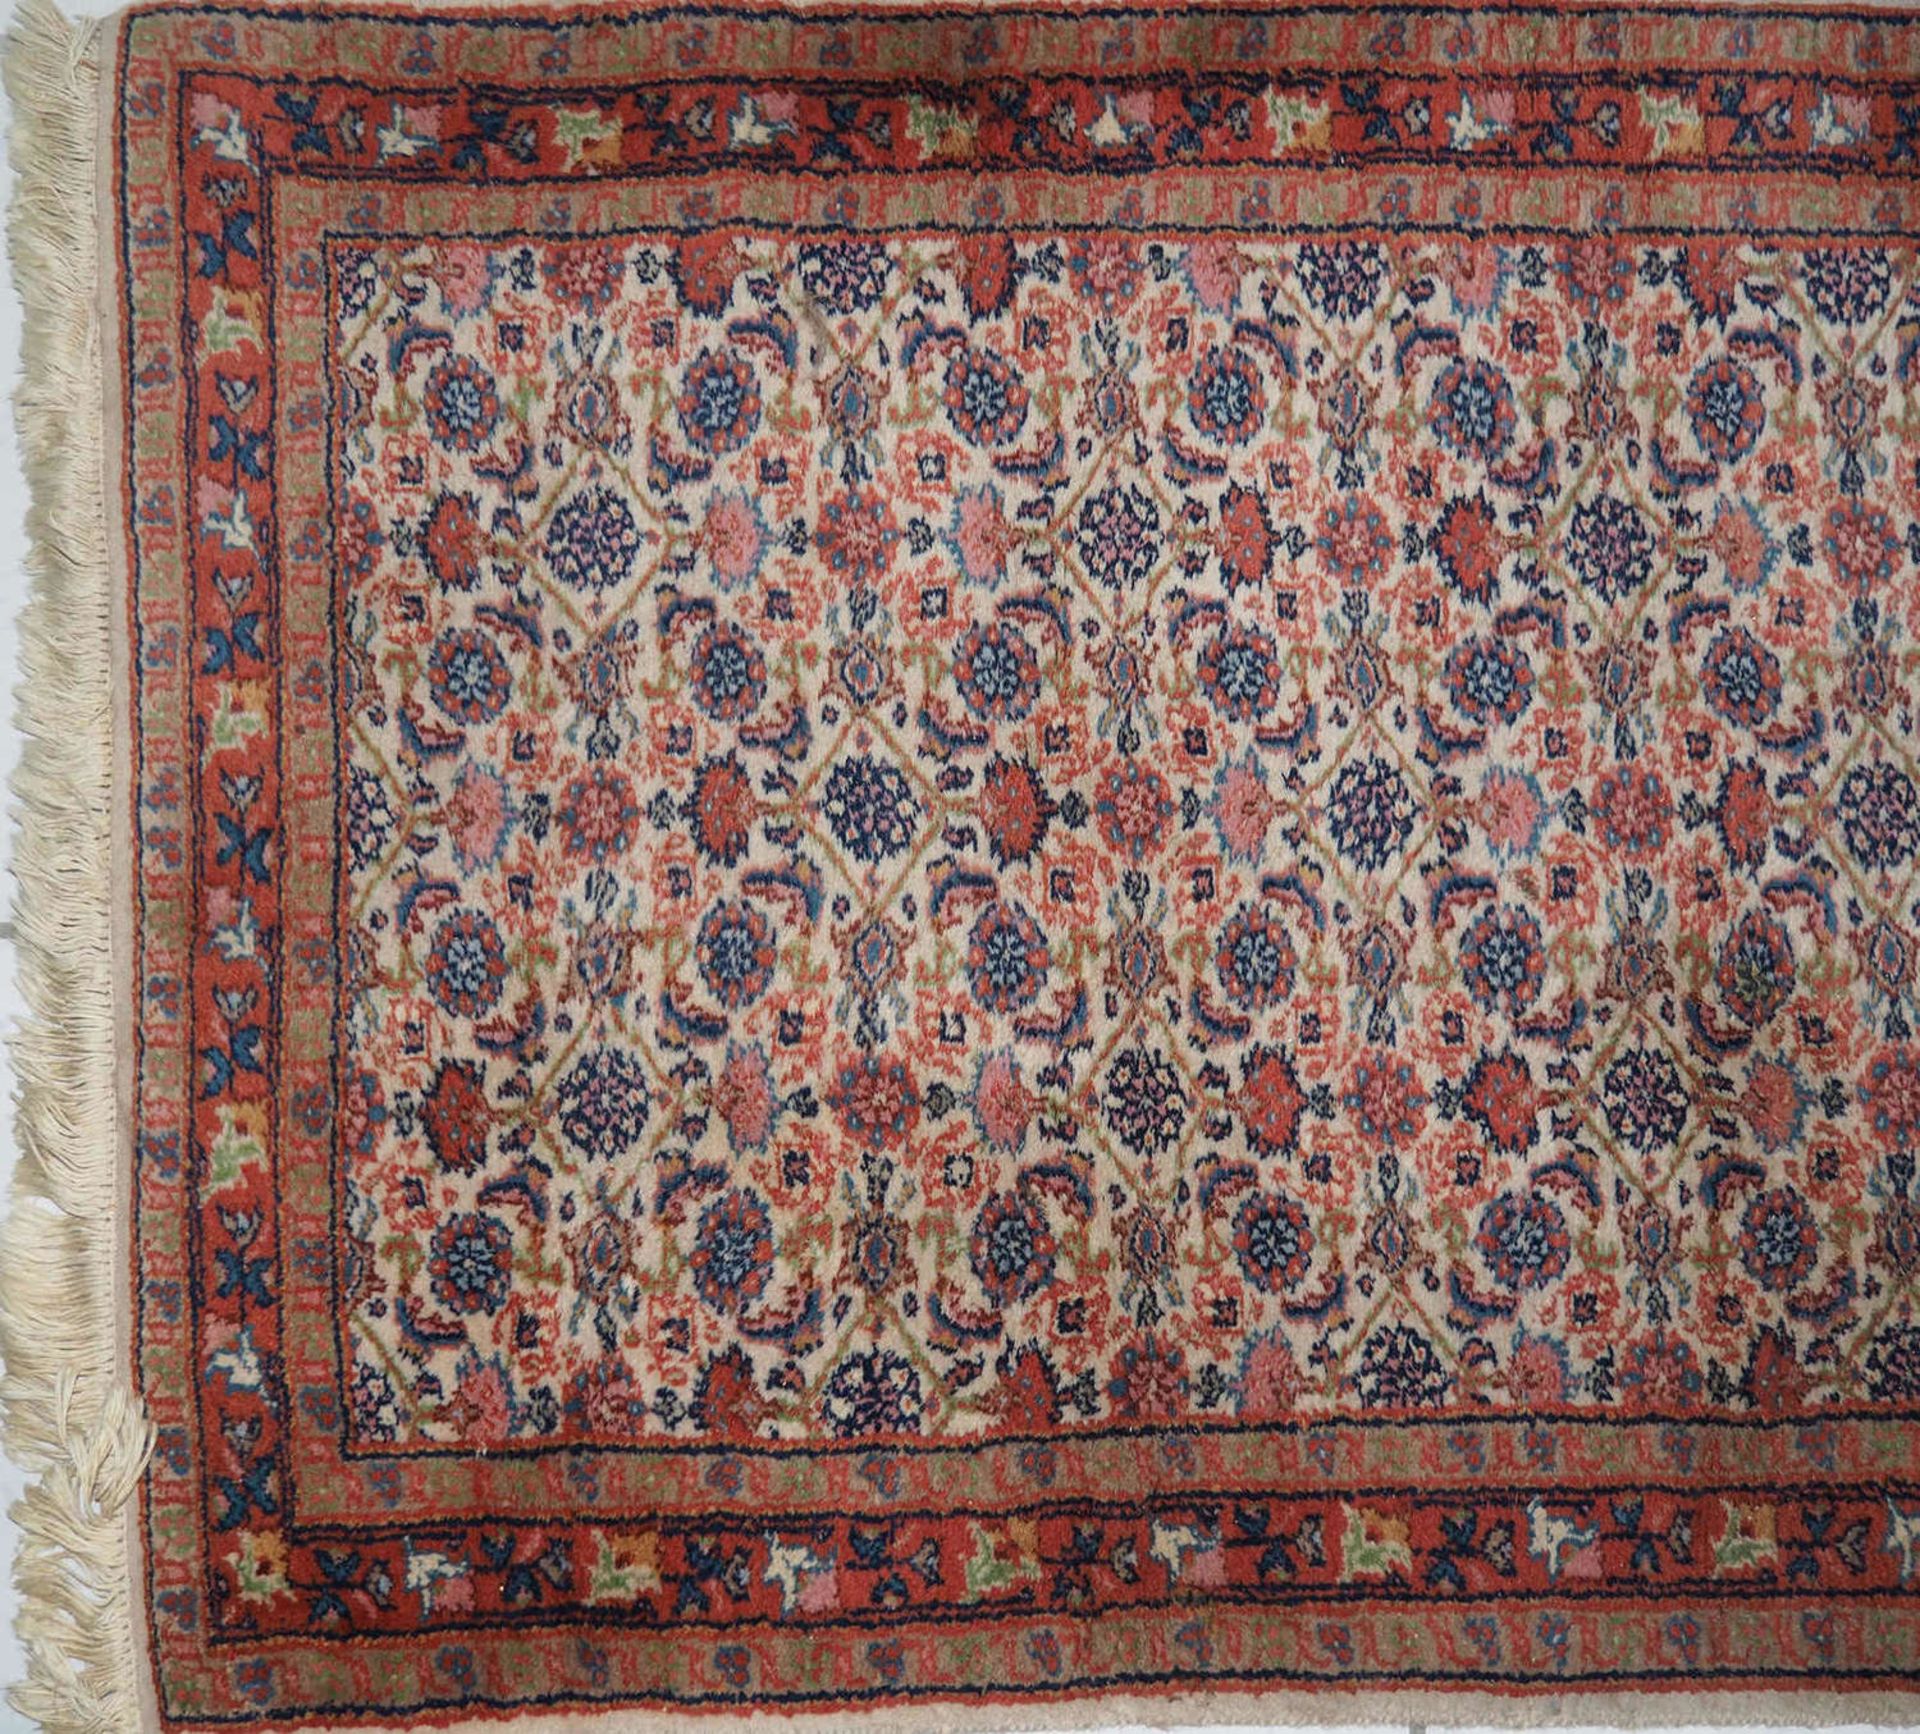 Teppich - Läufer, Afghanistan - Herat. Handarbeit, Wolle. Maße: ca. 191 cm x ca. 92 cm.Carpet